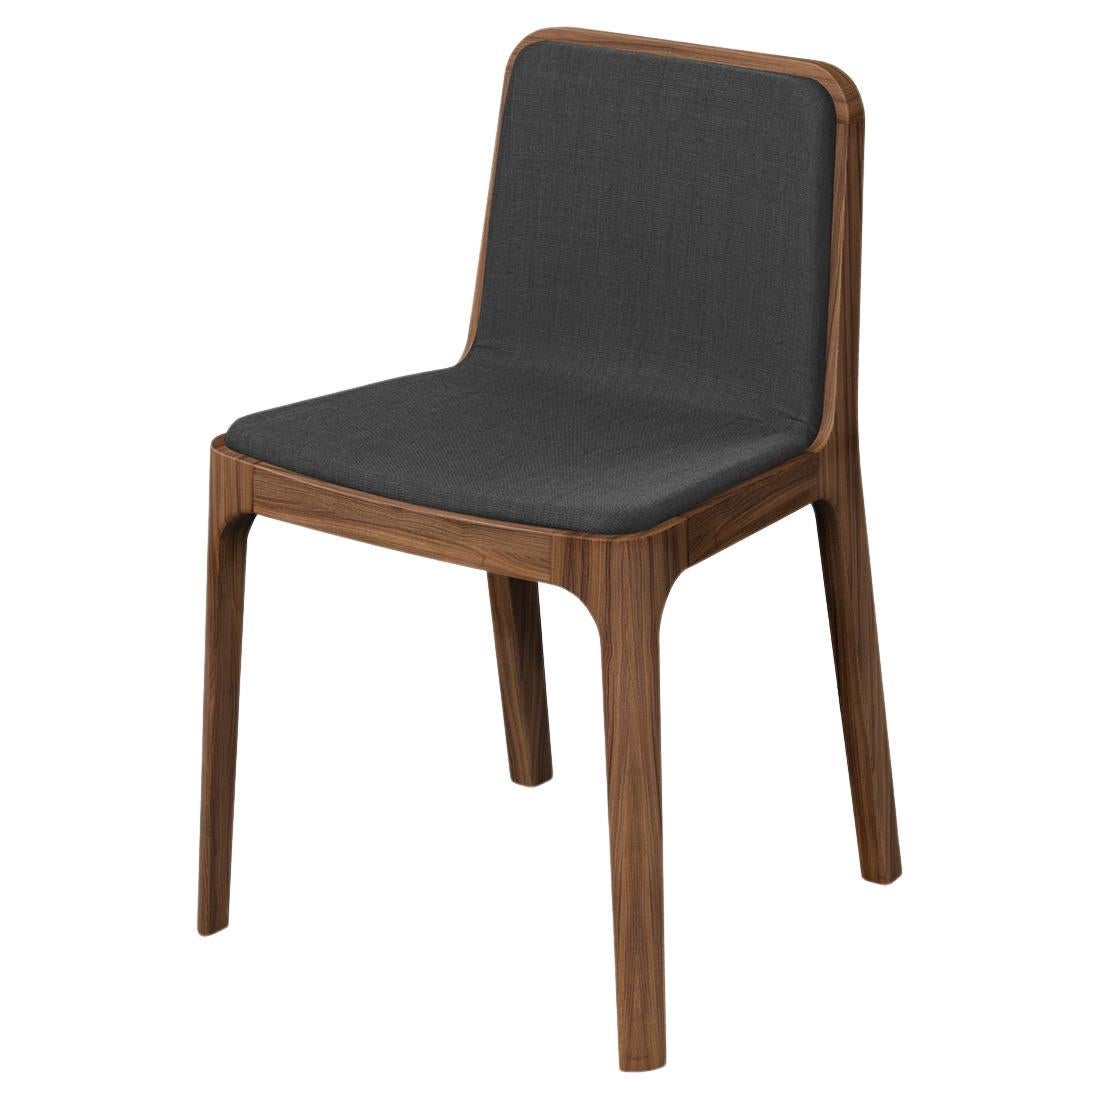 Chaise Modernity minimaliste, bois de frêne / teinté noyer, revêtement en tissu finlandais en vente